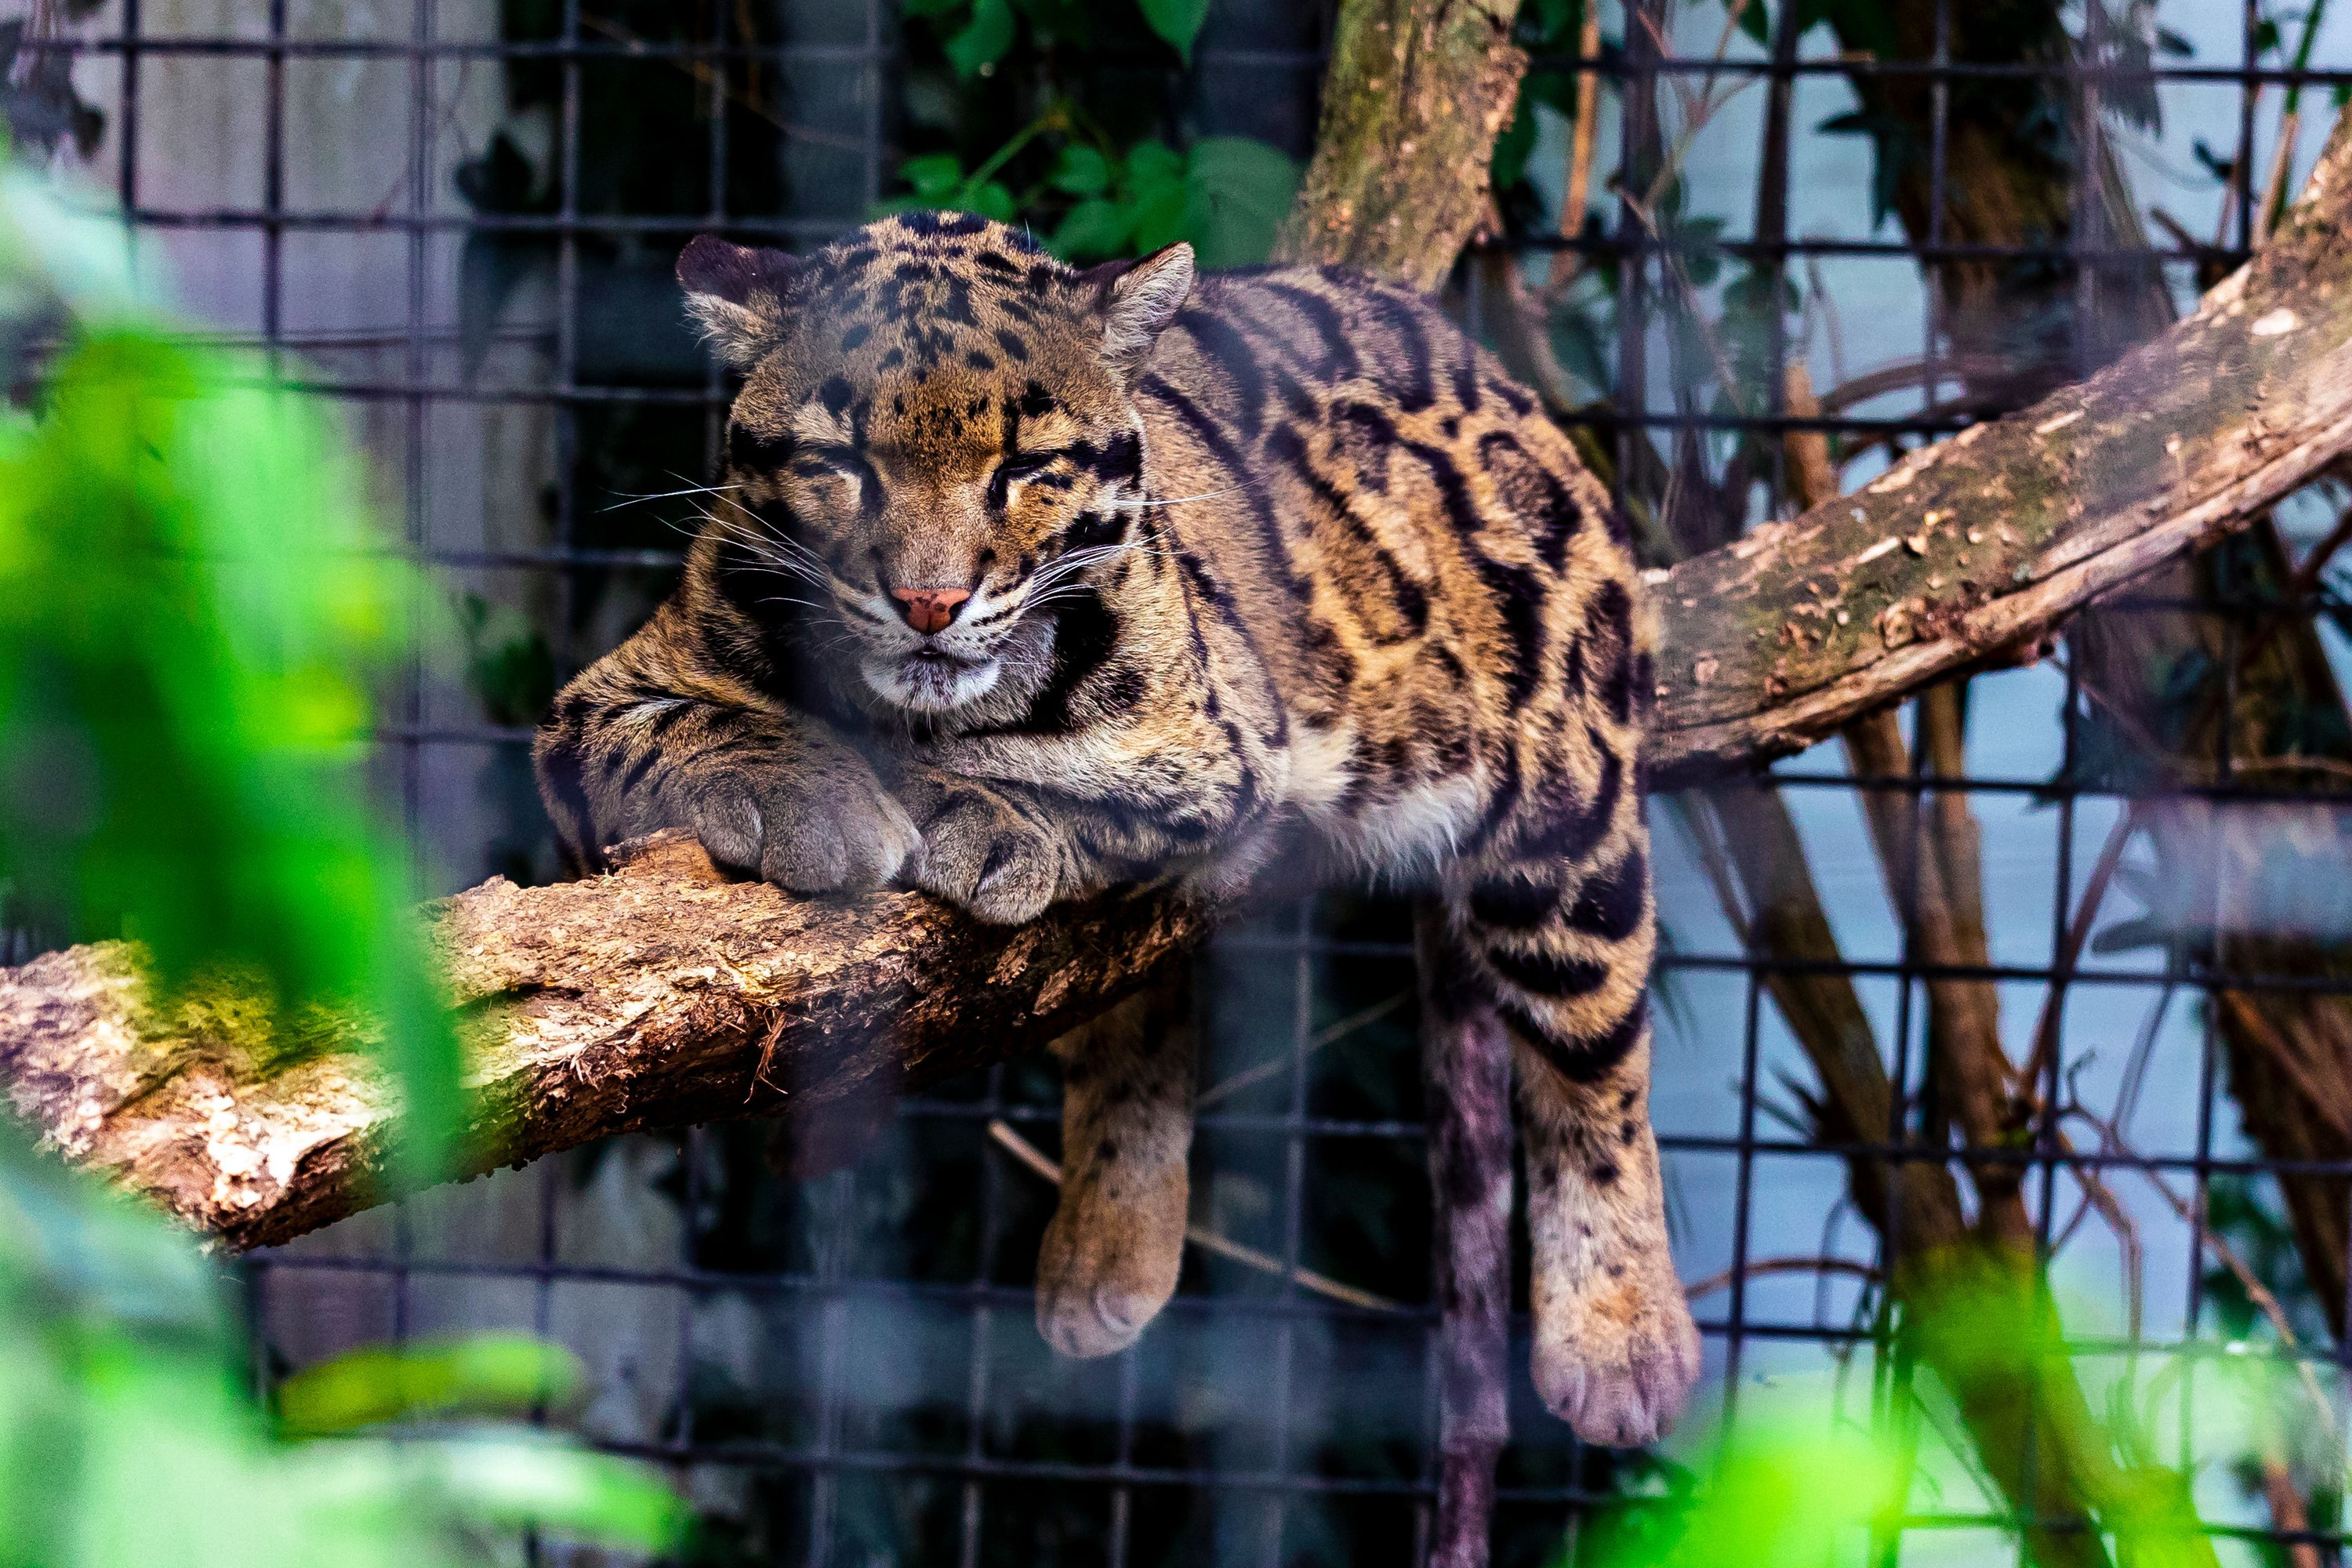 Dallas zoo closes after clouded leopard escapes its enclosure, Dallas